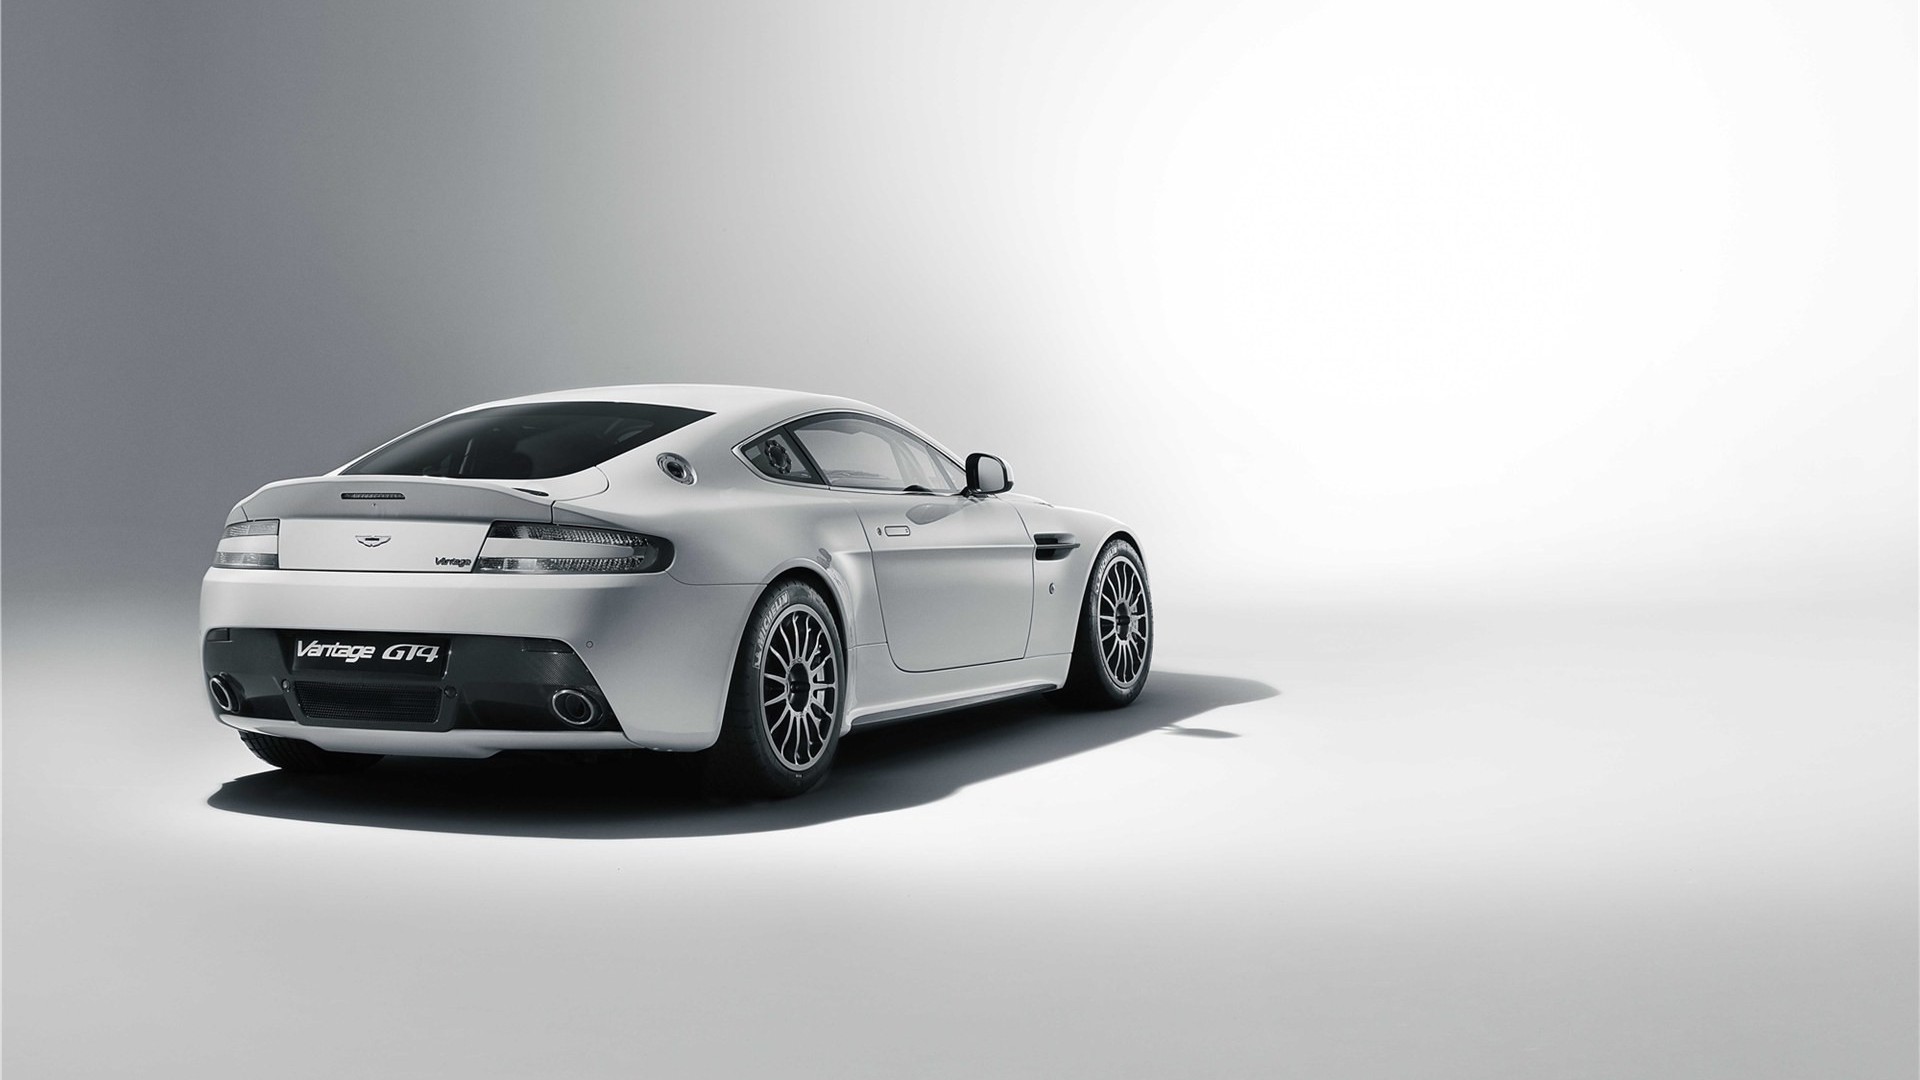 Meilleurs fonds d'écran Aston Martin Vantage Gt4 pour l'écran du téléphone